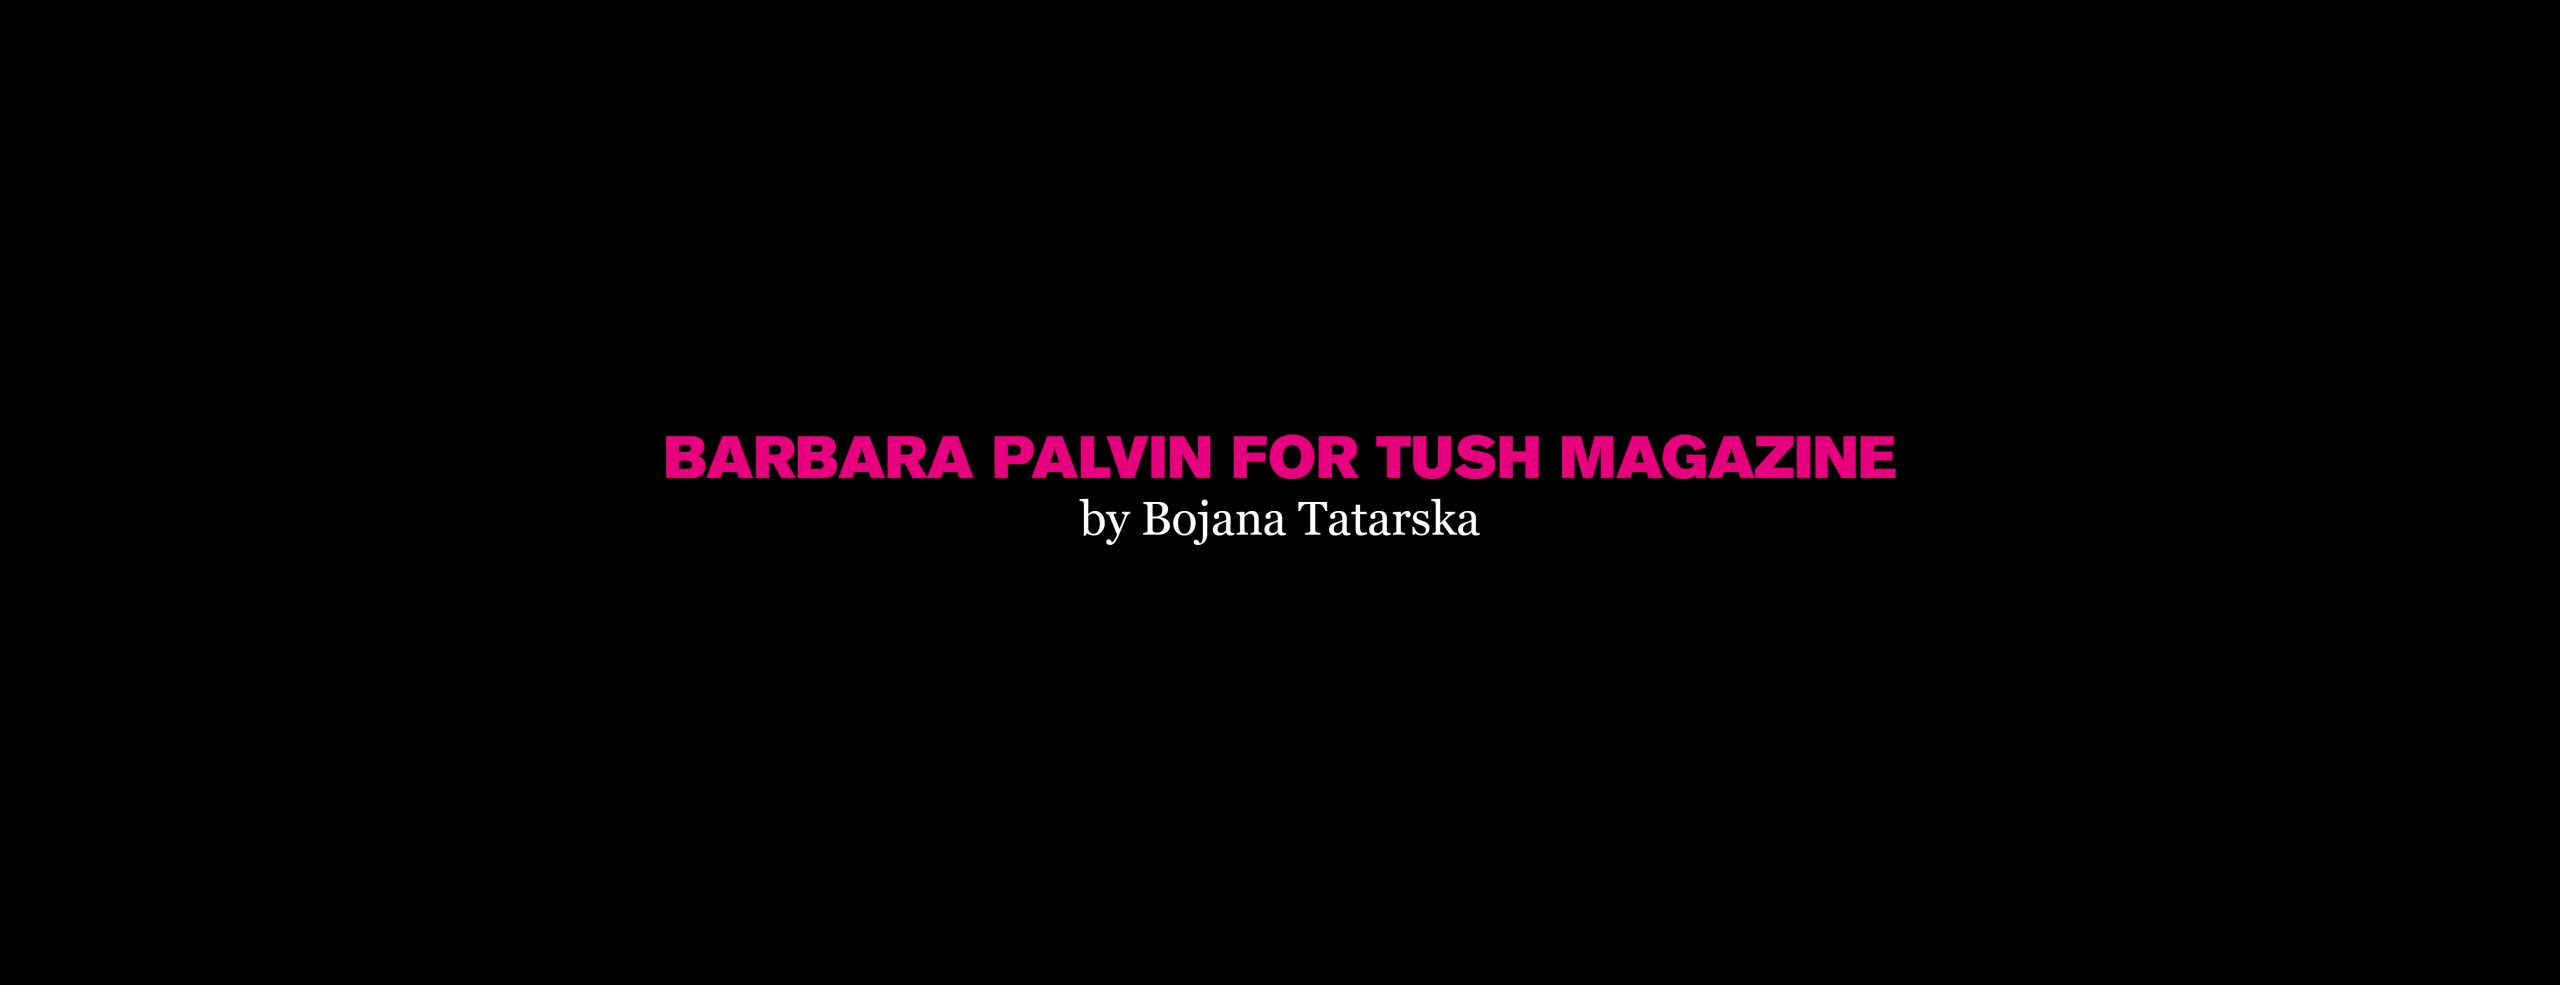 Tush Magazine Barbara Palvin by Bojana Tarska